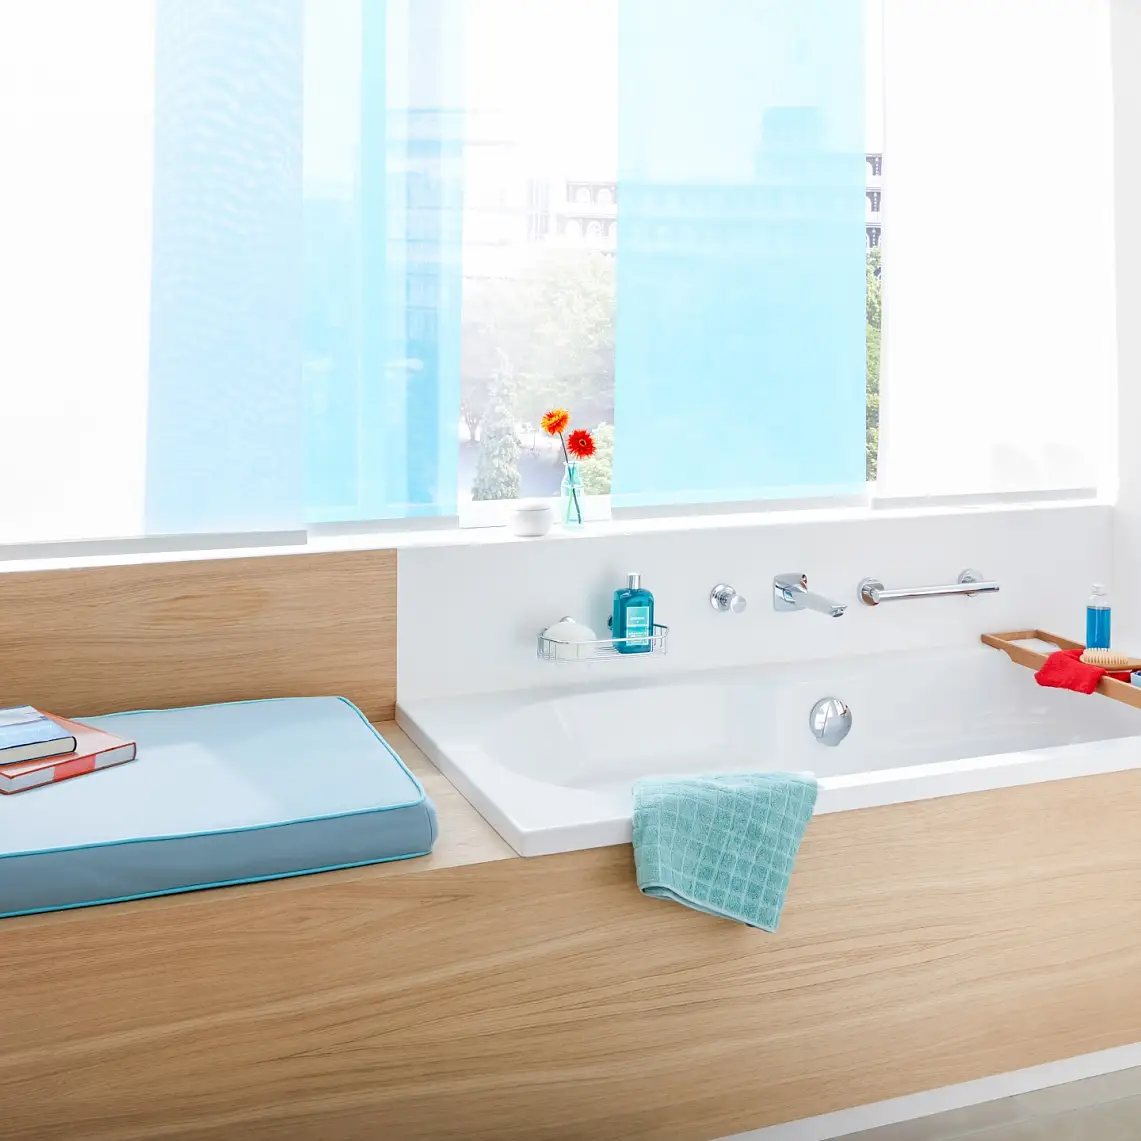 Barres d’appui et solutions de rangement en laiton chromé pour la salle de bains.